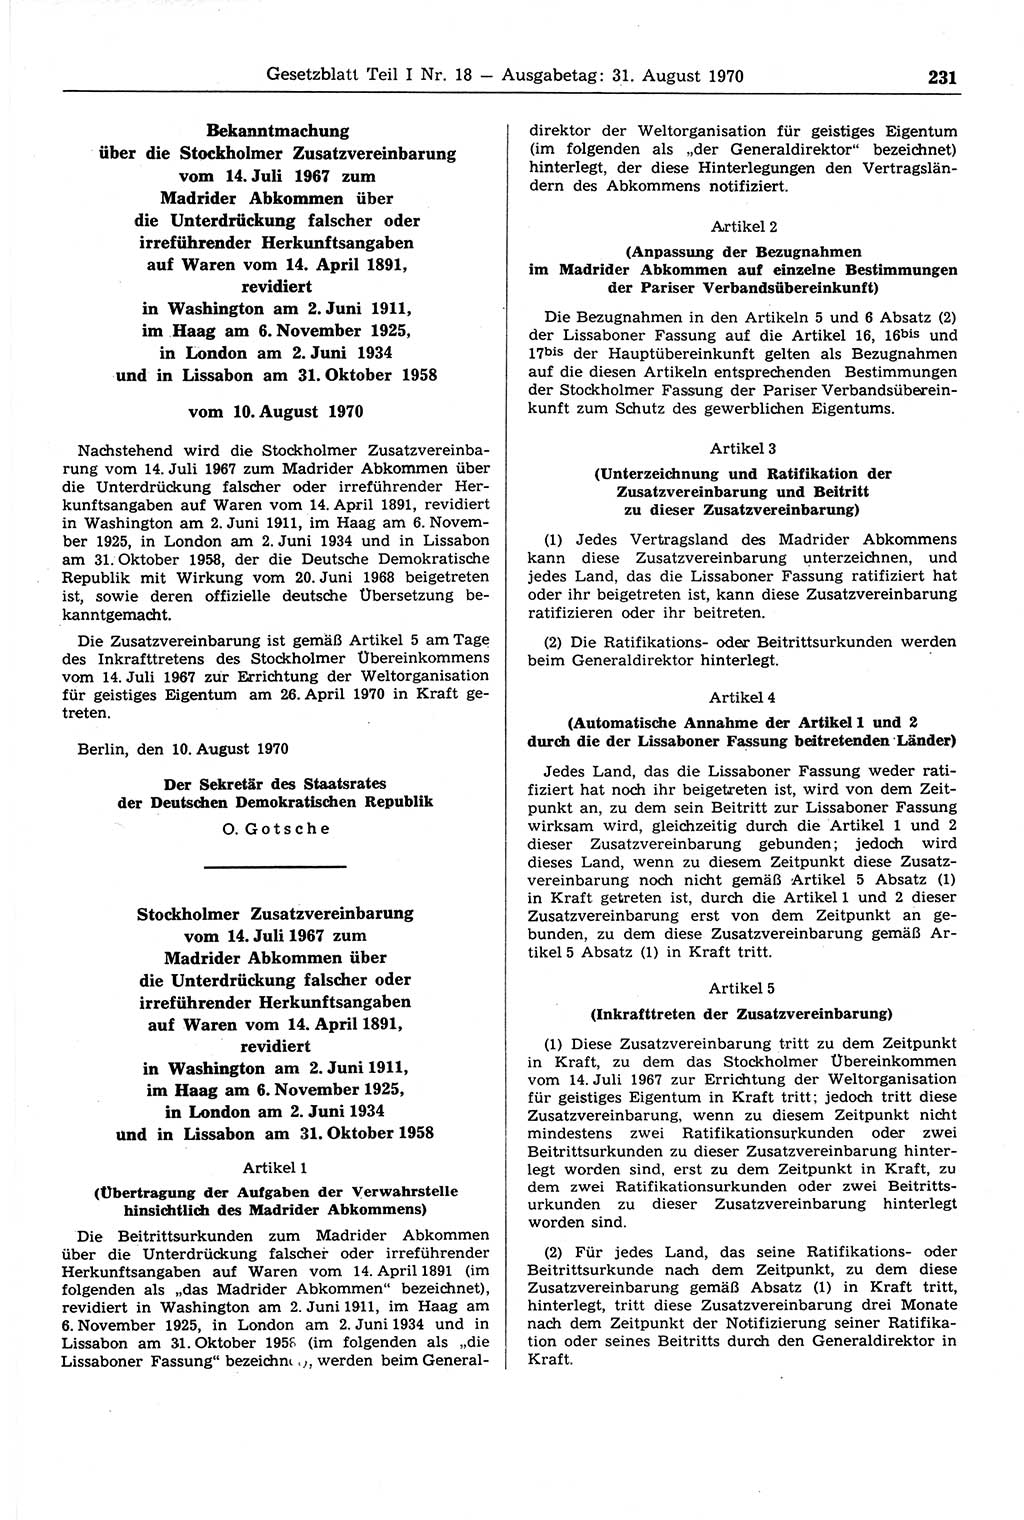 Gesetzblatt (GBl.) der Deutschen Demokratischen Republik (DDR) Teil Ⅰ 1970, Seite 231 (GBl. DDR Ⅰ 1970, S. 231)